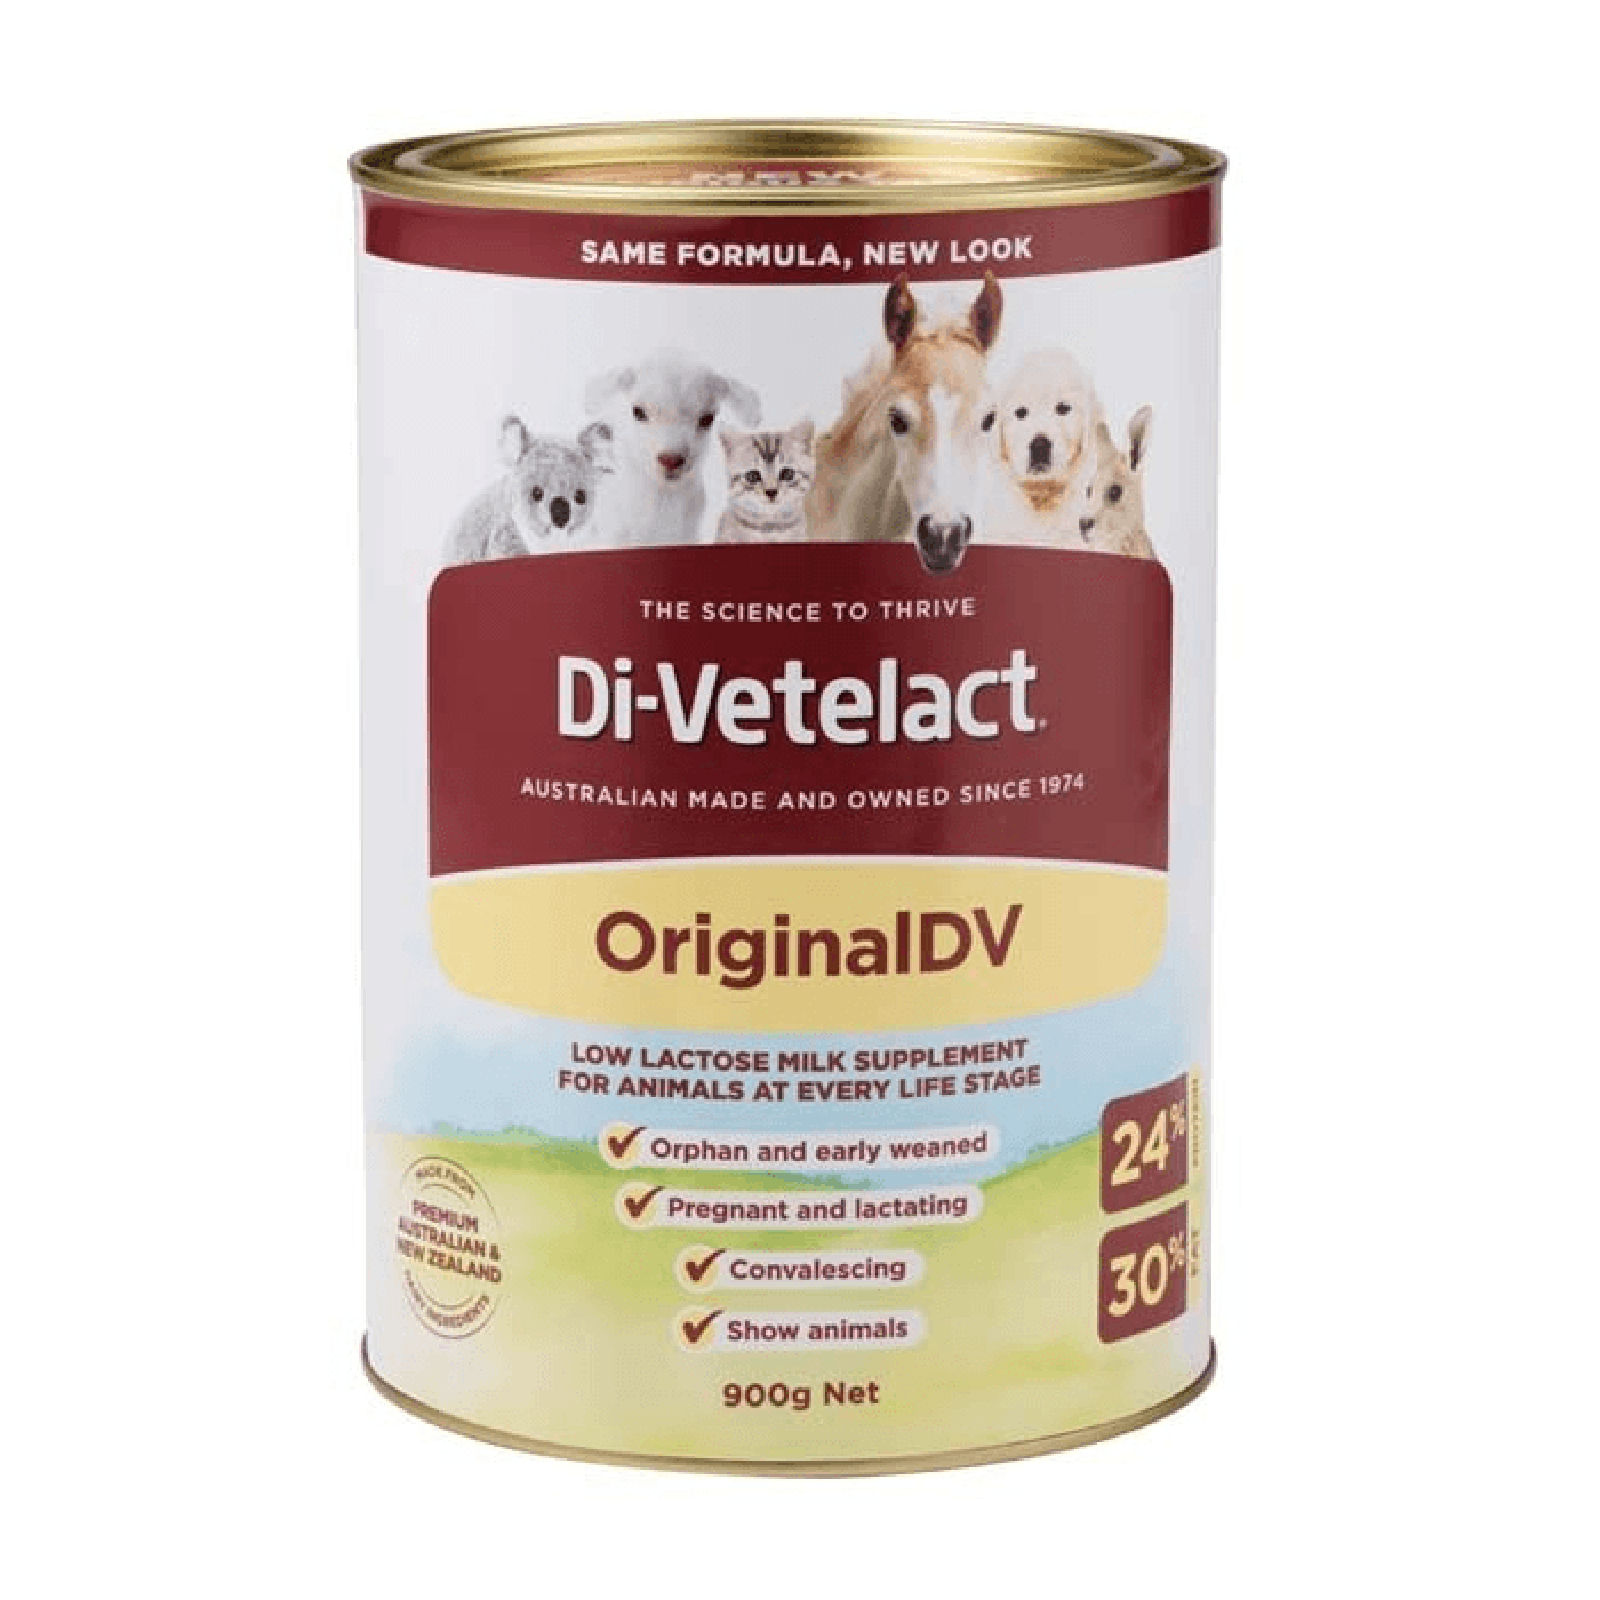 Di-Vetelact Milk Replacement